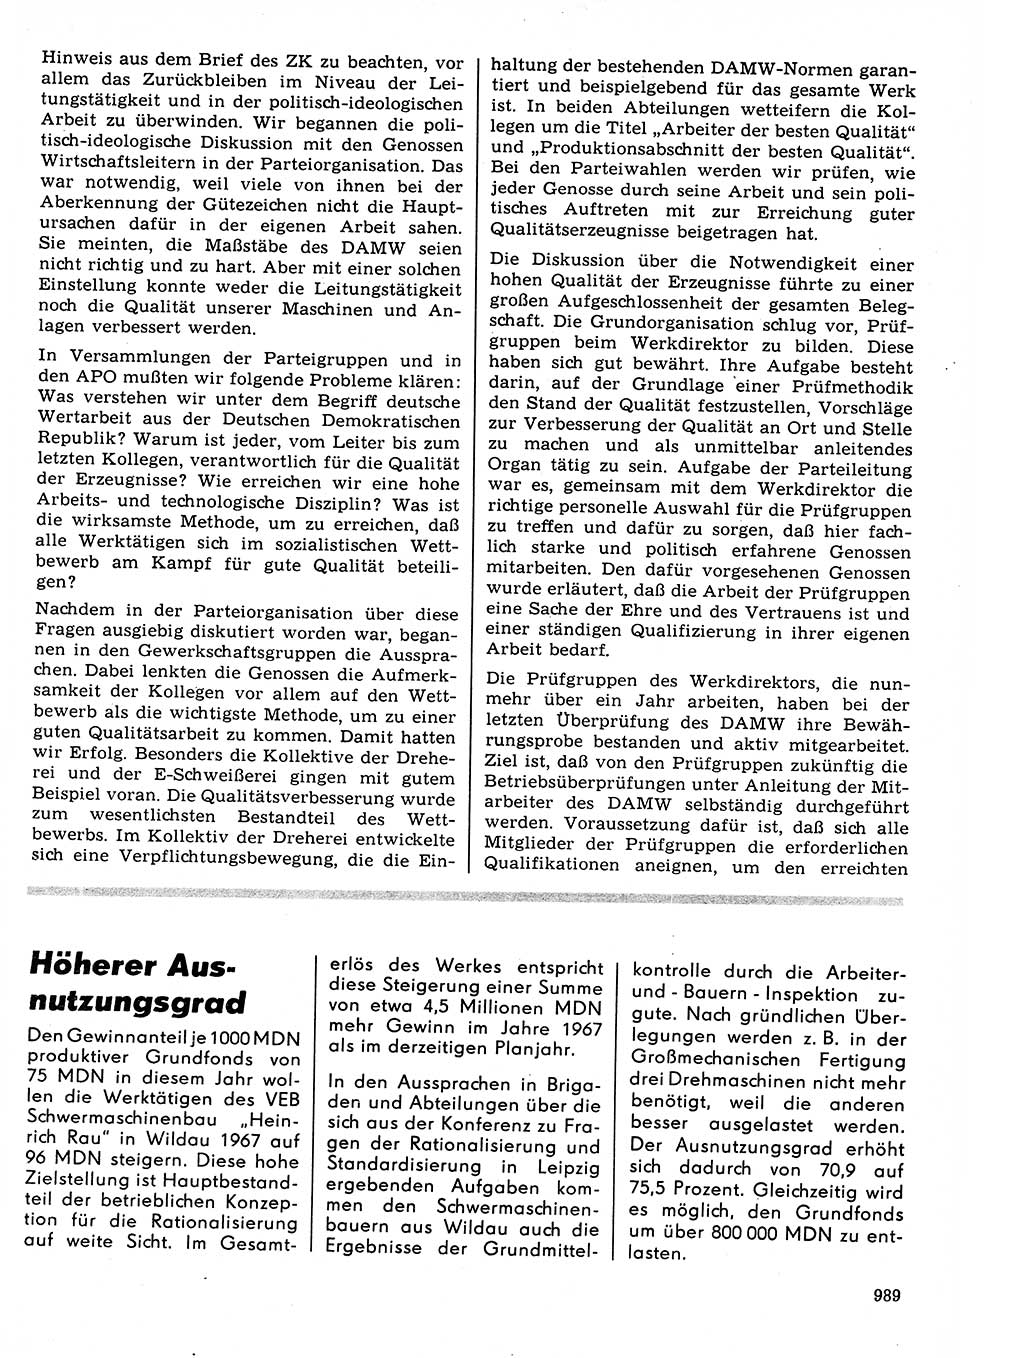 Neuer Weg (NW), Organ des Zentralkomitees (ZK) der SED (Sozialistische Einheitspartei Deutschlands) für Fragen des Parteilebens, 21. Jahrgang [Deutsche Demokratische Republik (DDR)] 1966, Seite 989 (NW ZK SED DDR 1966, S. 989)